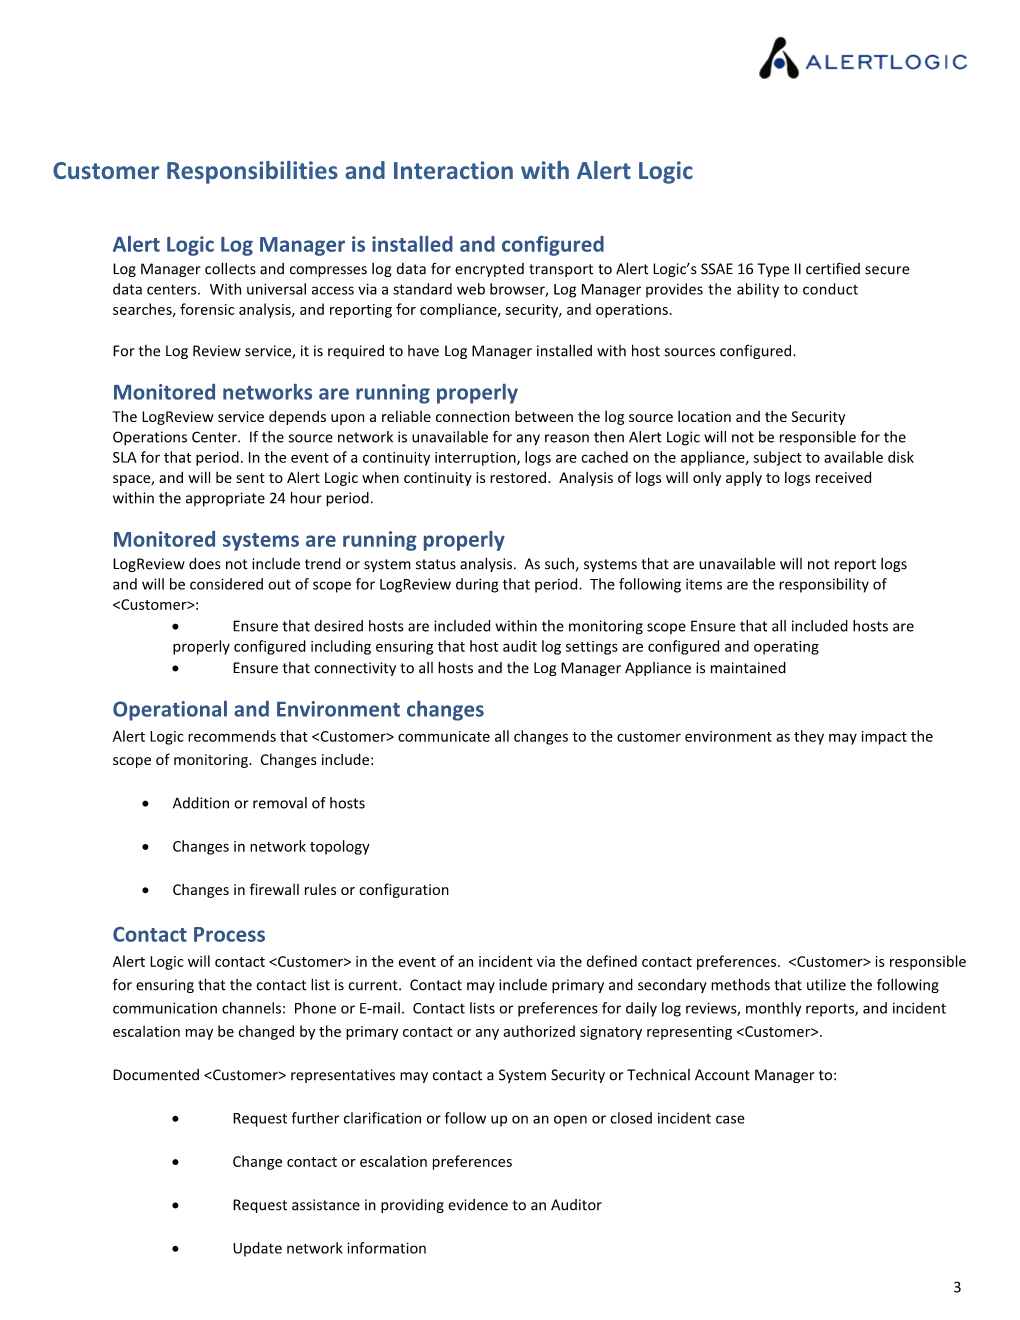 Logreview Standard Service Definition for &lt;Customer&gt;